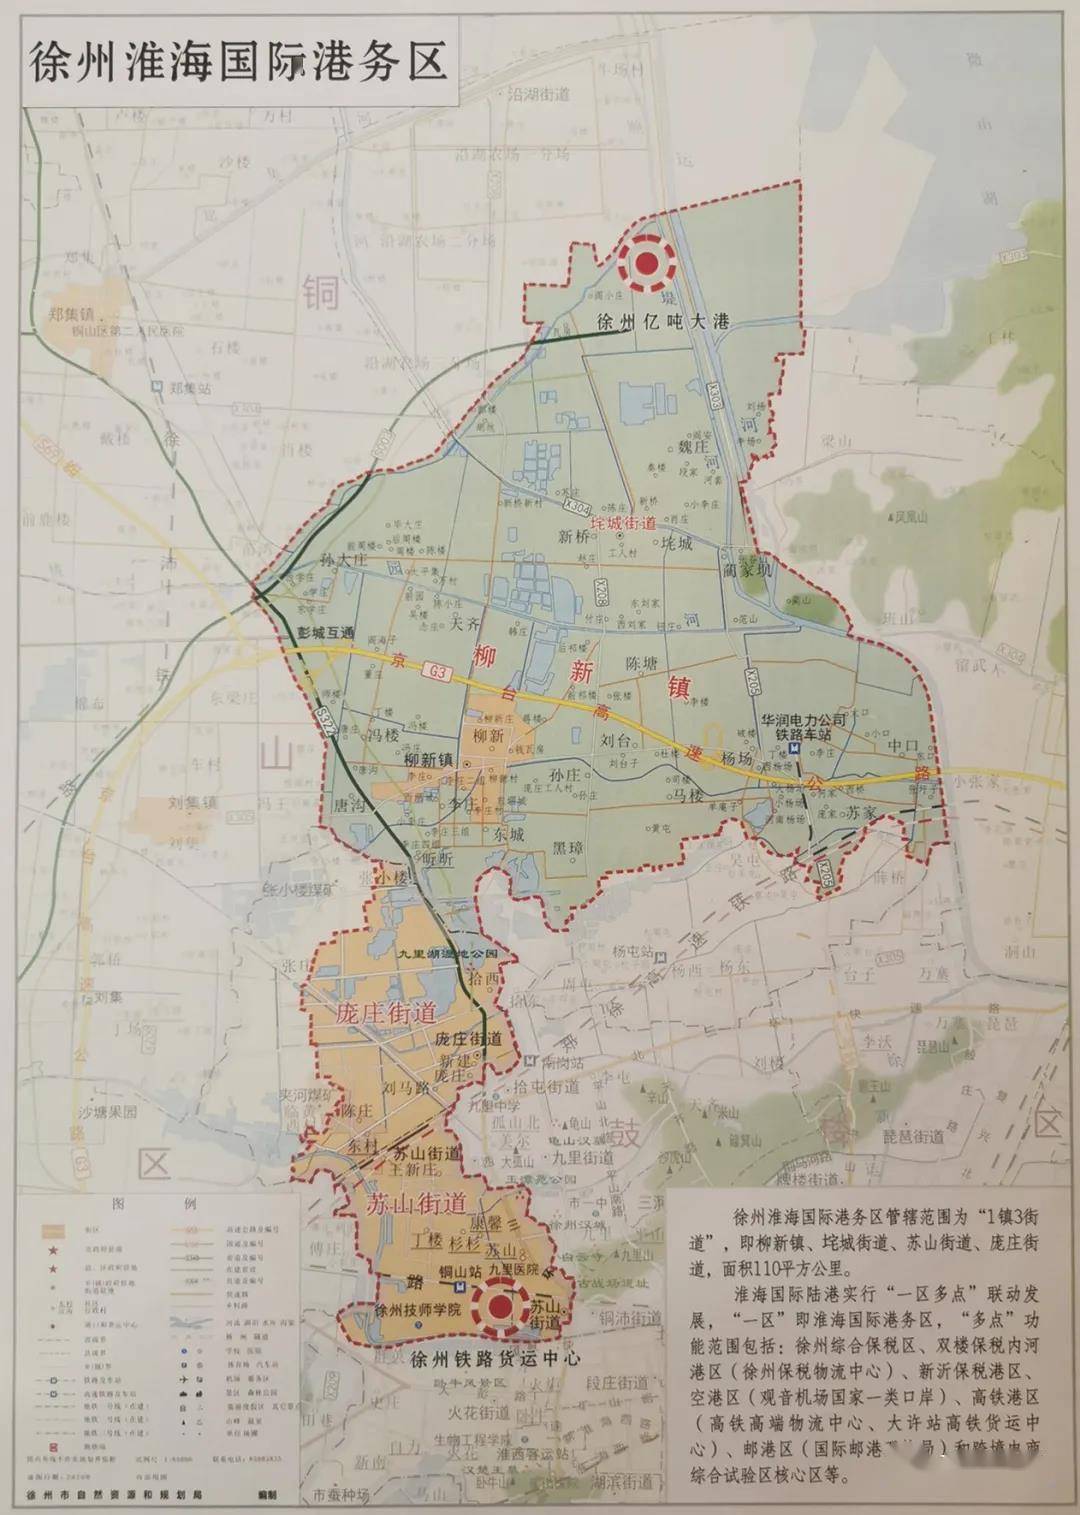 区划调整淮海国际港务区迎来拆迁徐州西北片区崛起